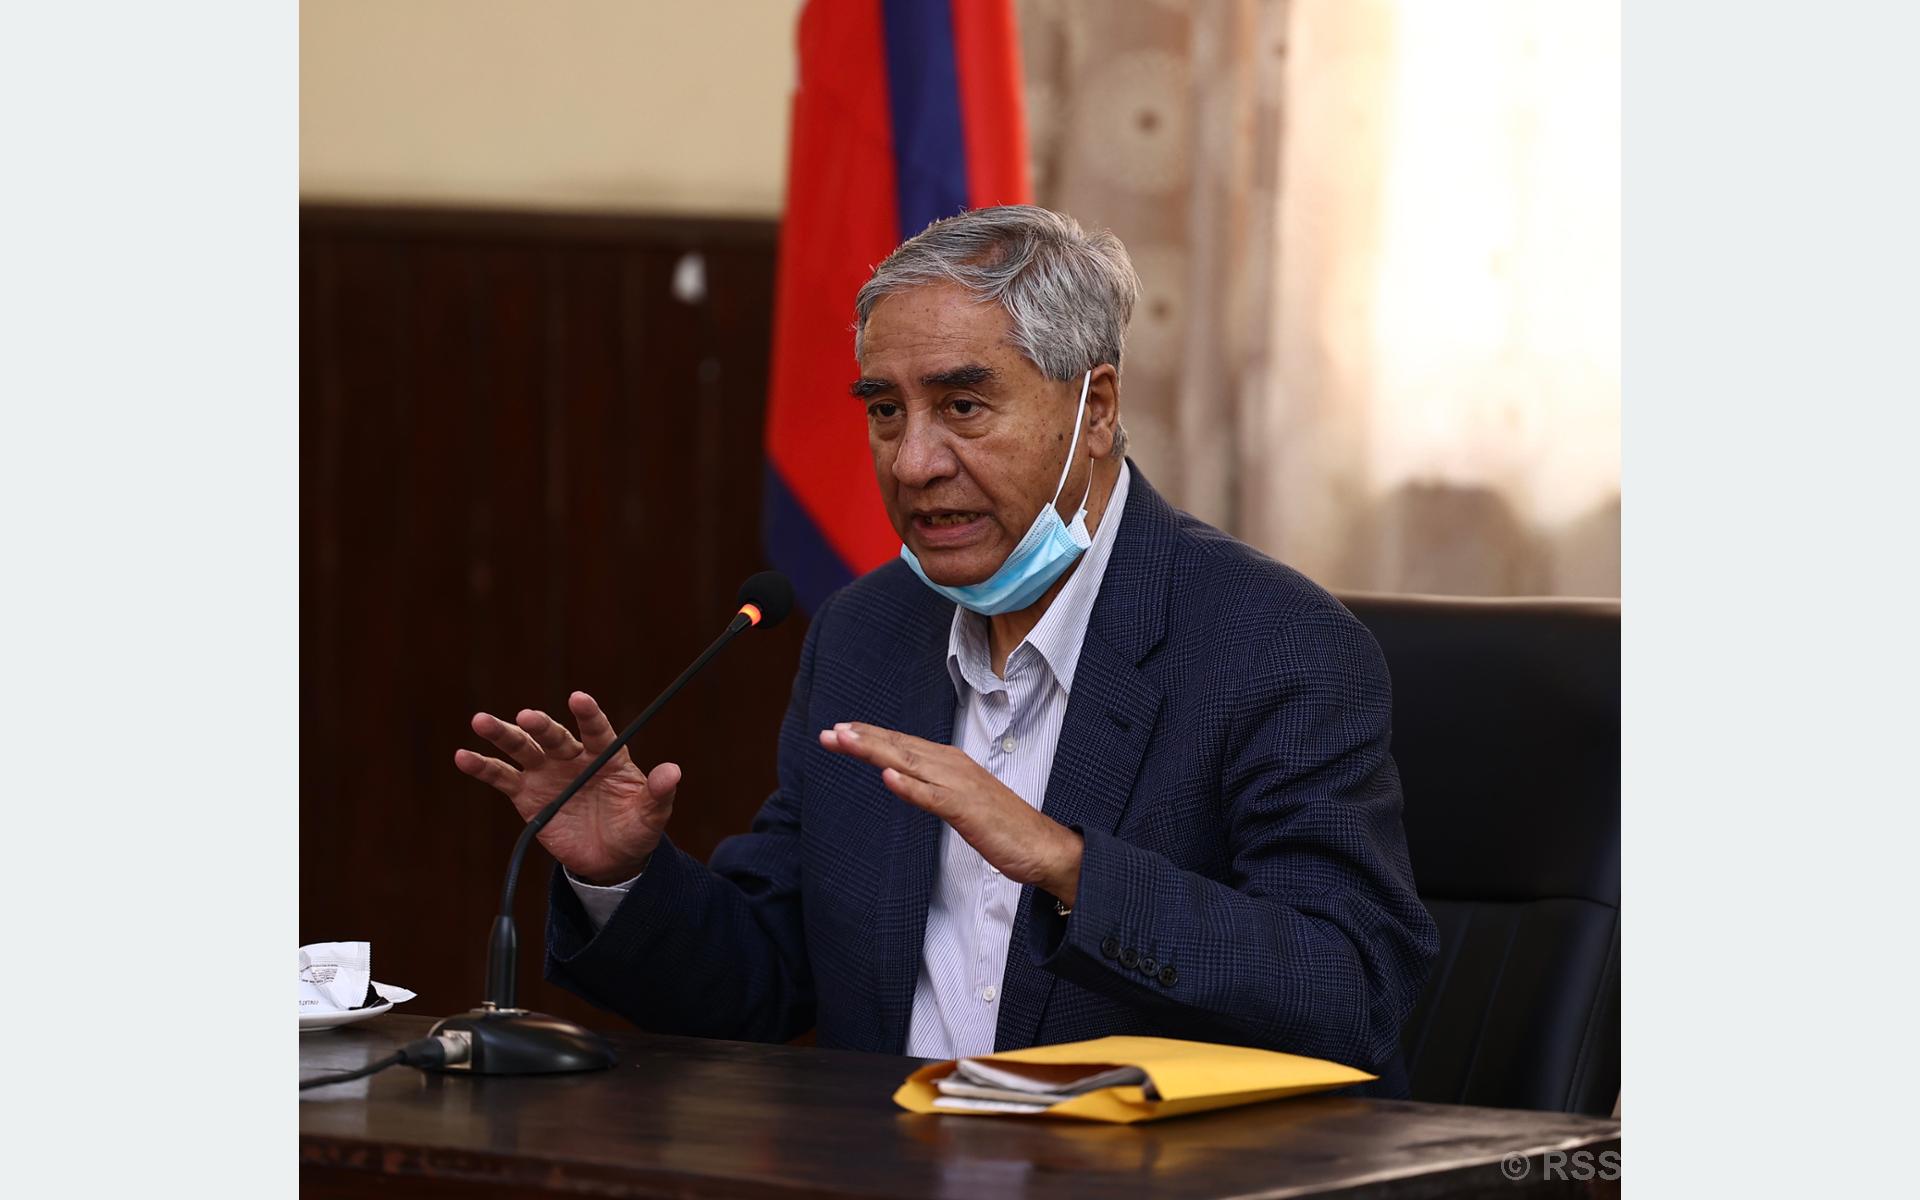 PM Deuba to declare Gandaki a literate province